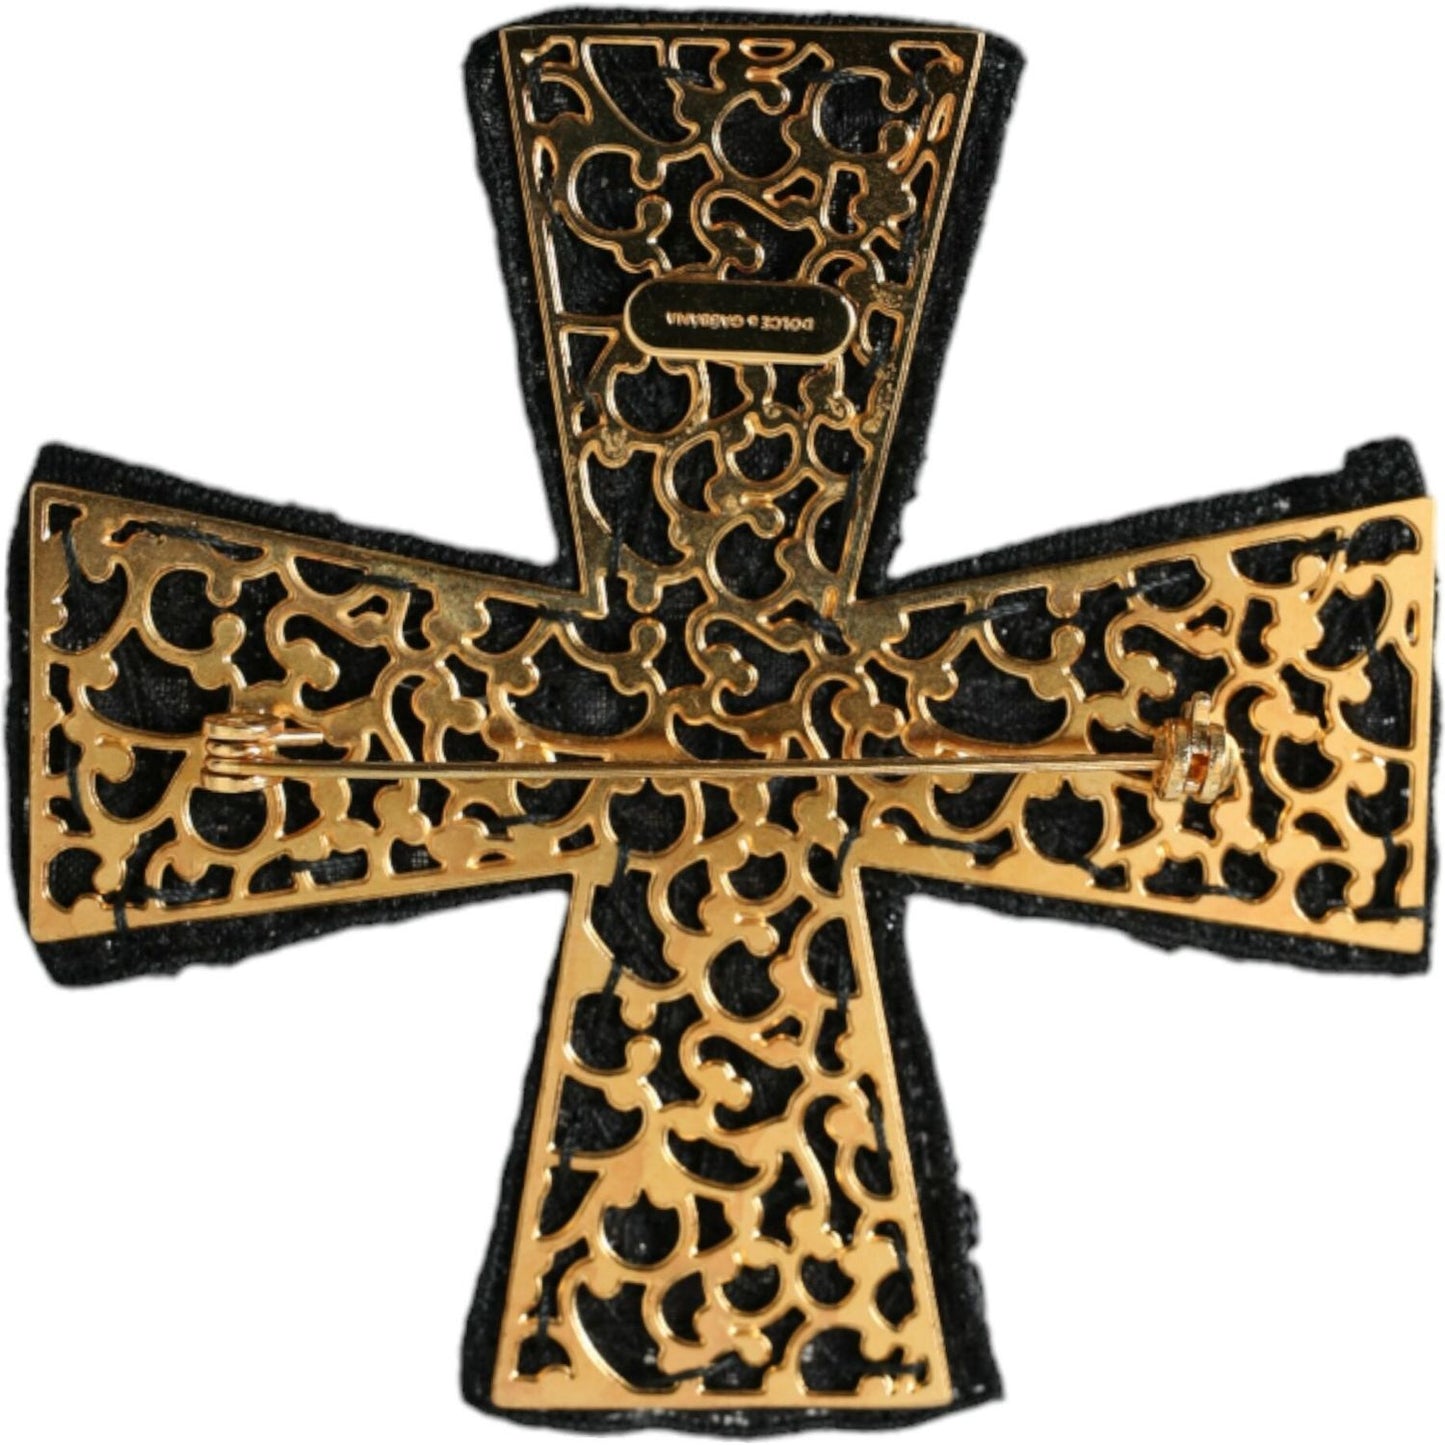 Dolce & Gabbana Black Crystals Embellished Cross Pin Brooch black-crystals-embellished-cross-pin-brooch